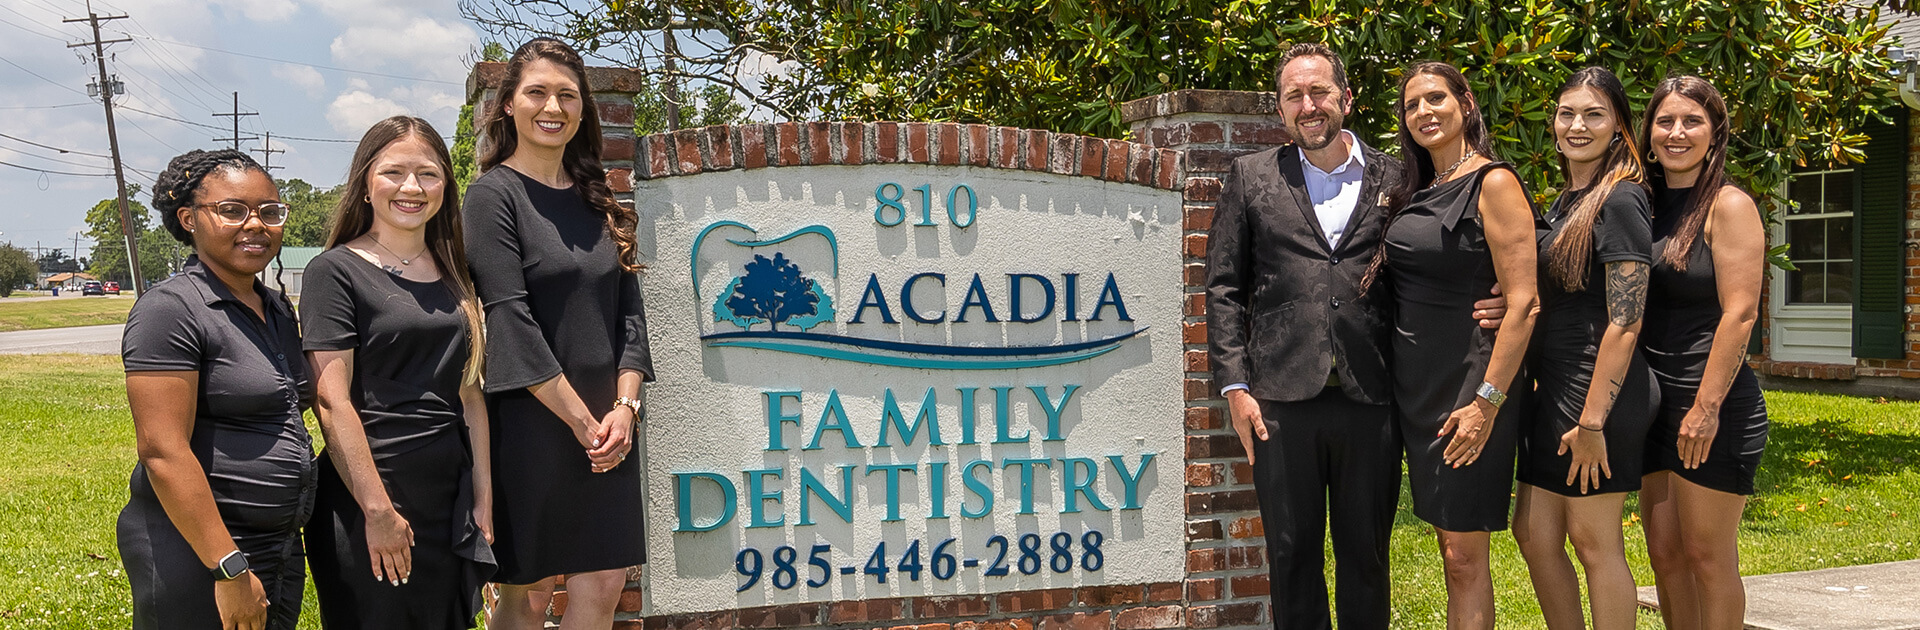 Acadia Family Dentistry Team